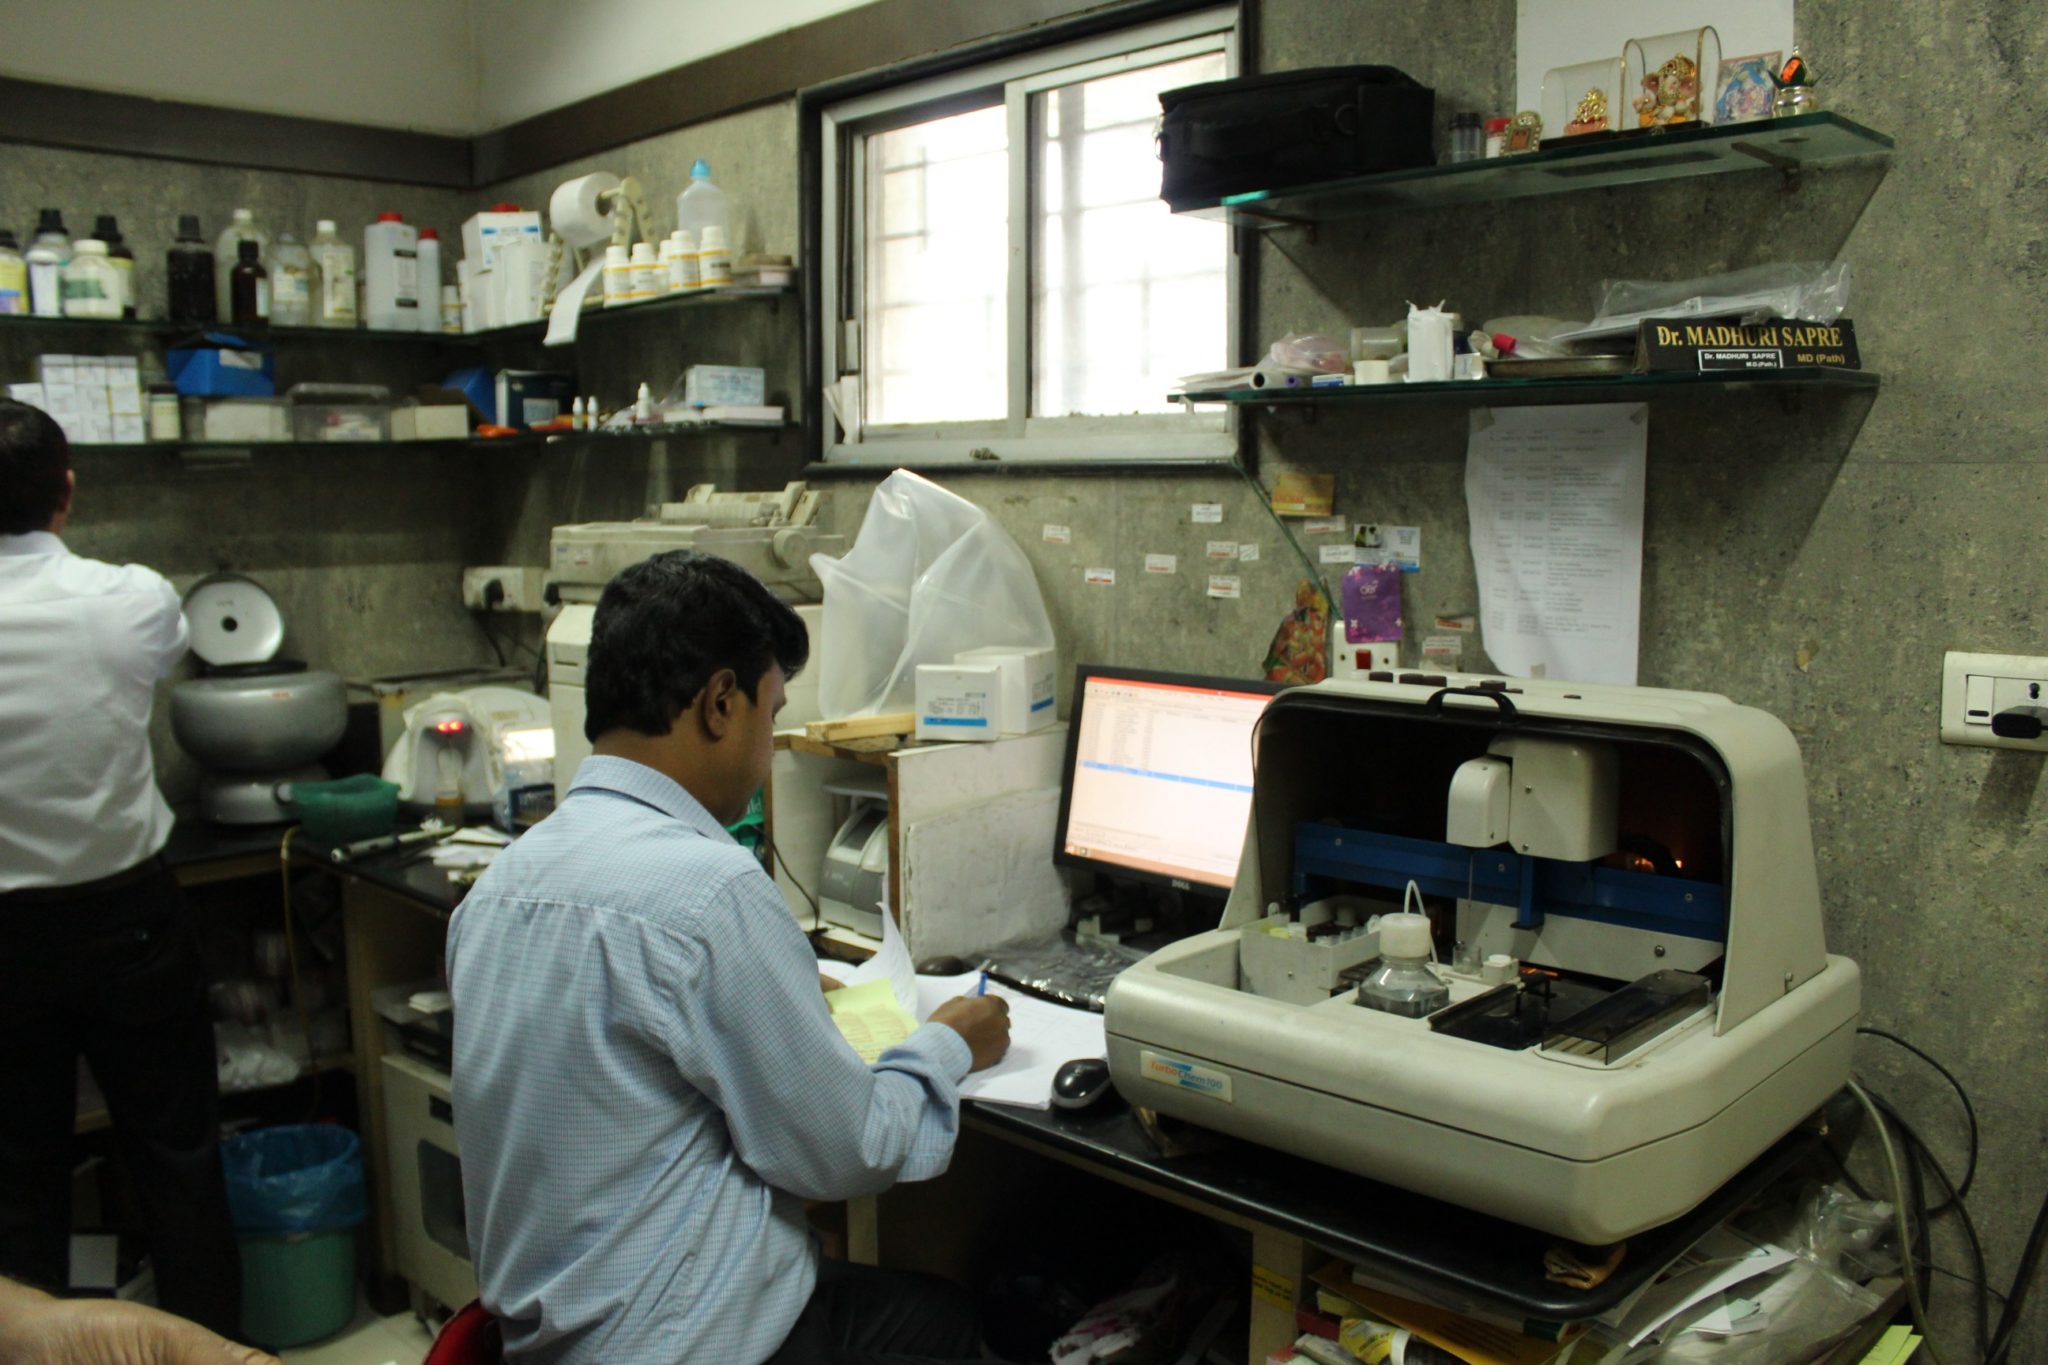 sunflower hospital Nagpur | Dr Jay Deshmukh